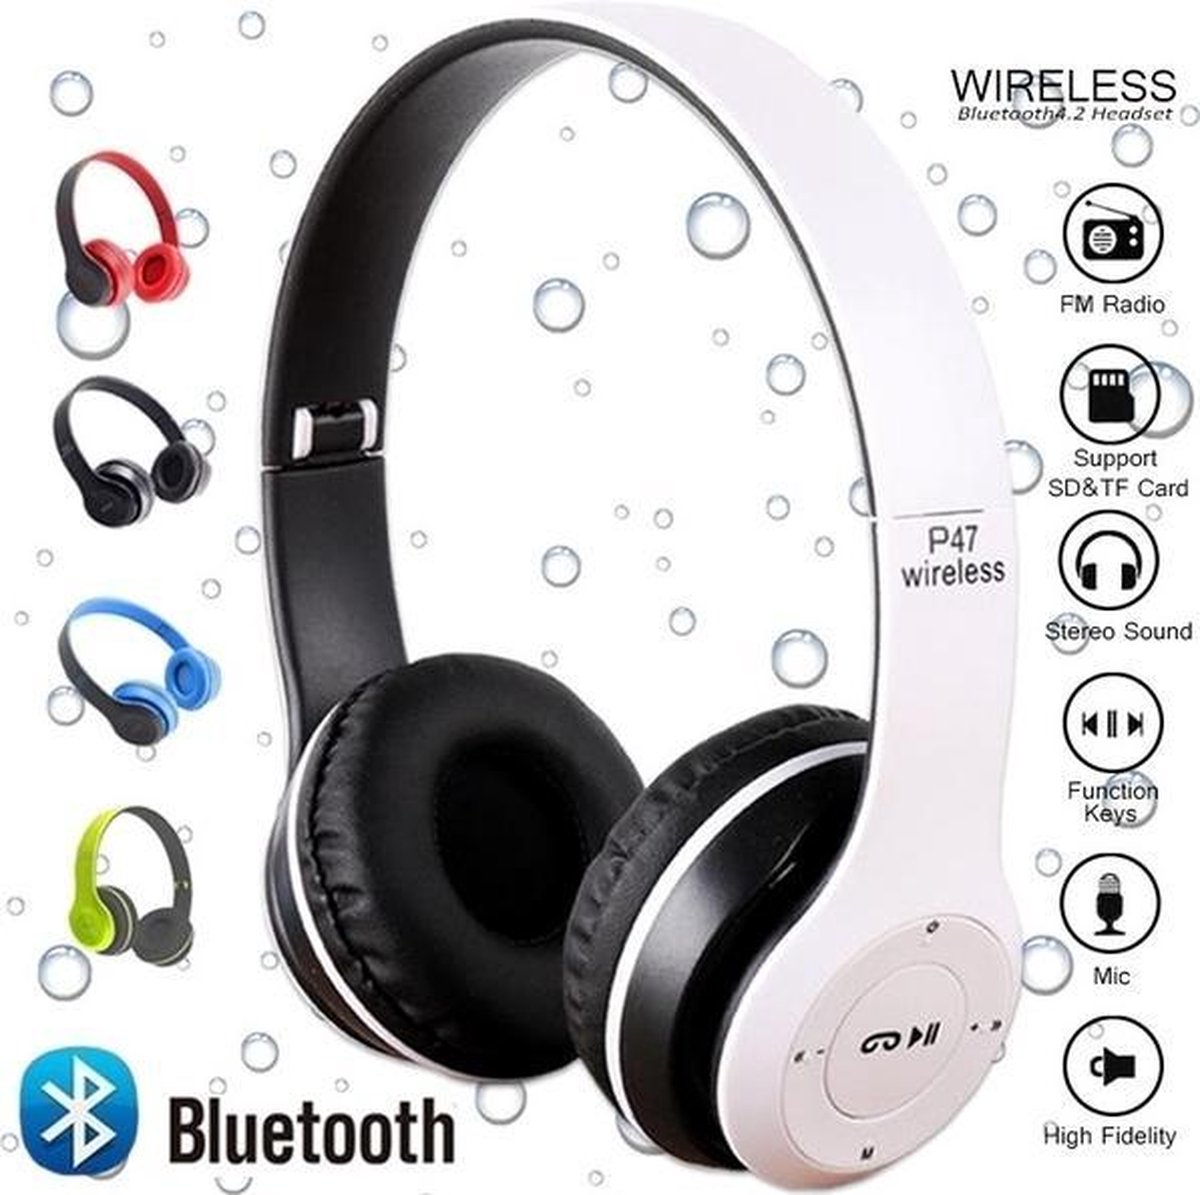 P47 5.0| Bluetooth Hoofdtelefoon | Draadloze Headset | Wireless Headphones | Opvouwbaar| Handsfree bellen| Microfoon|MP3| FM Radio|Wit